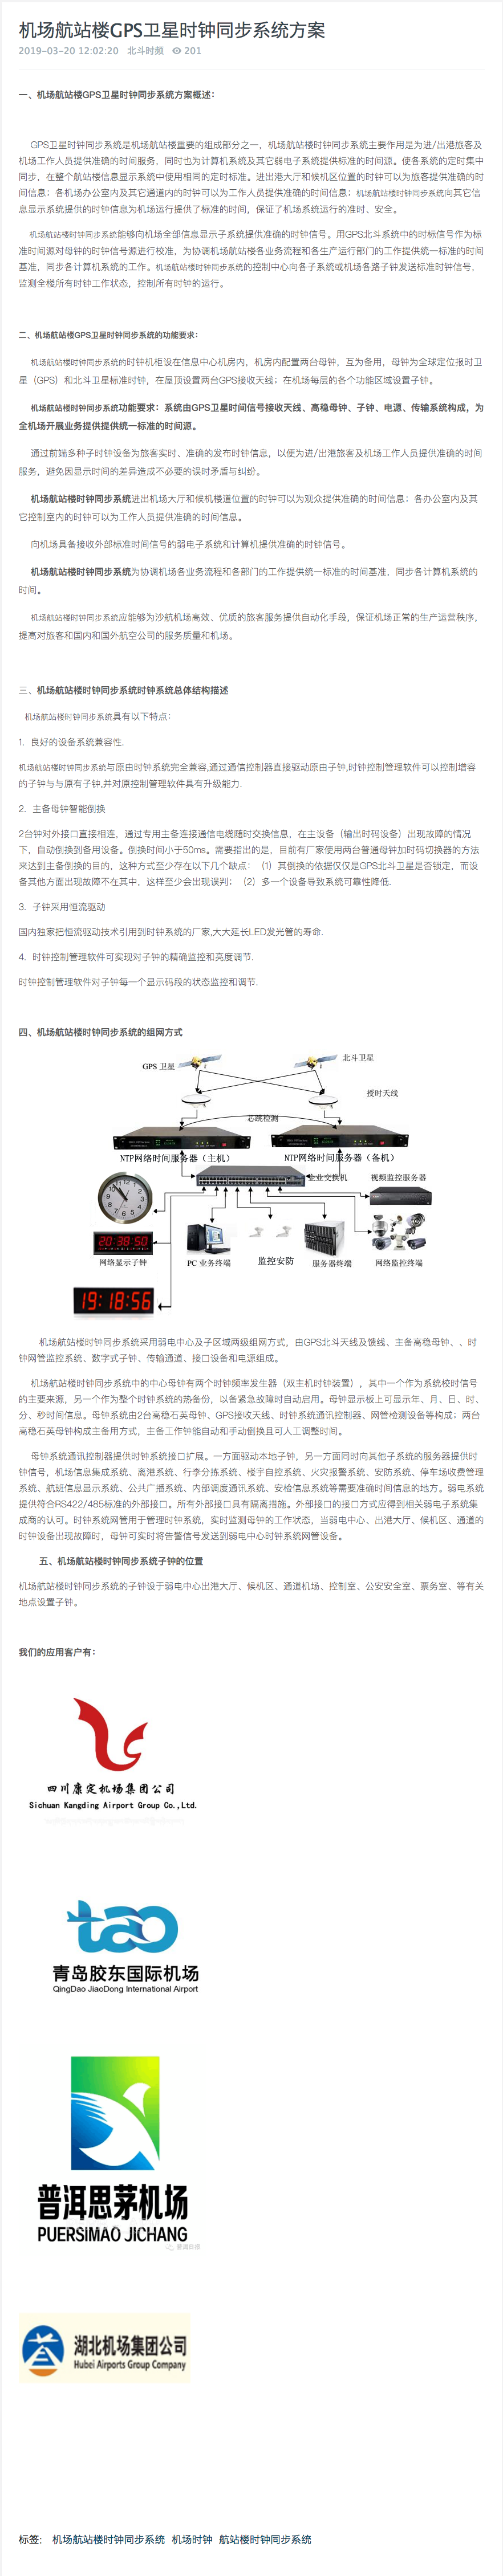 企服商城, 机场航站楼GPS卫星时钟同步系统方案,北京北斗时间